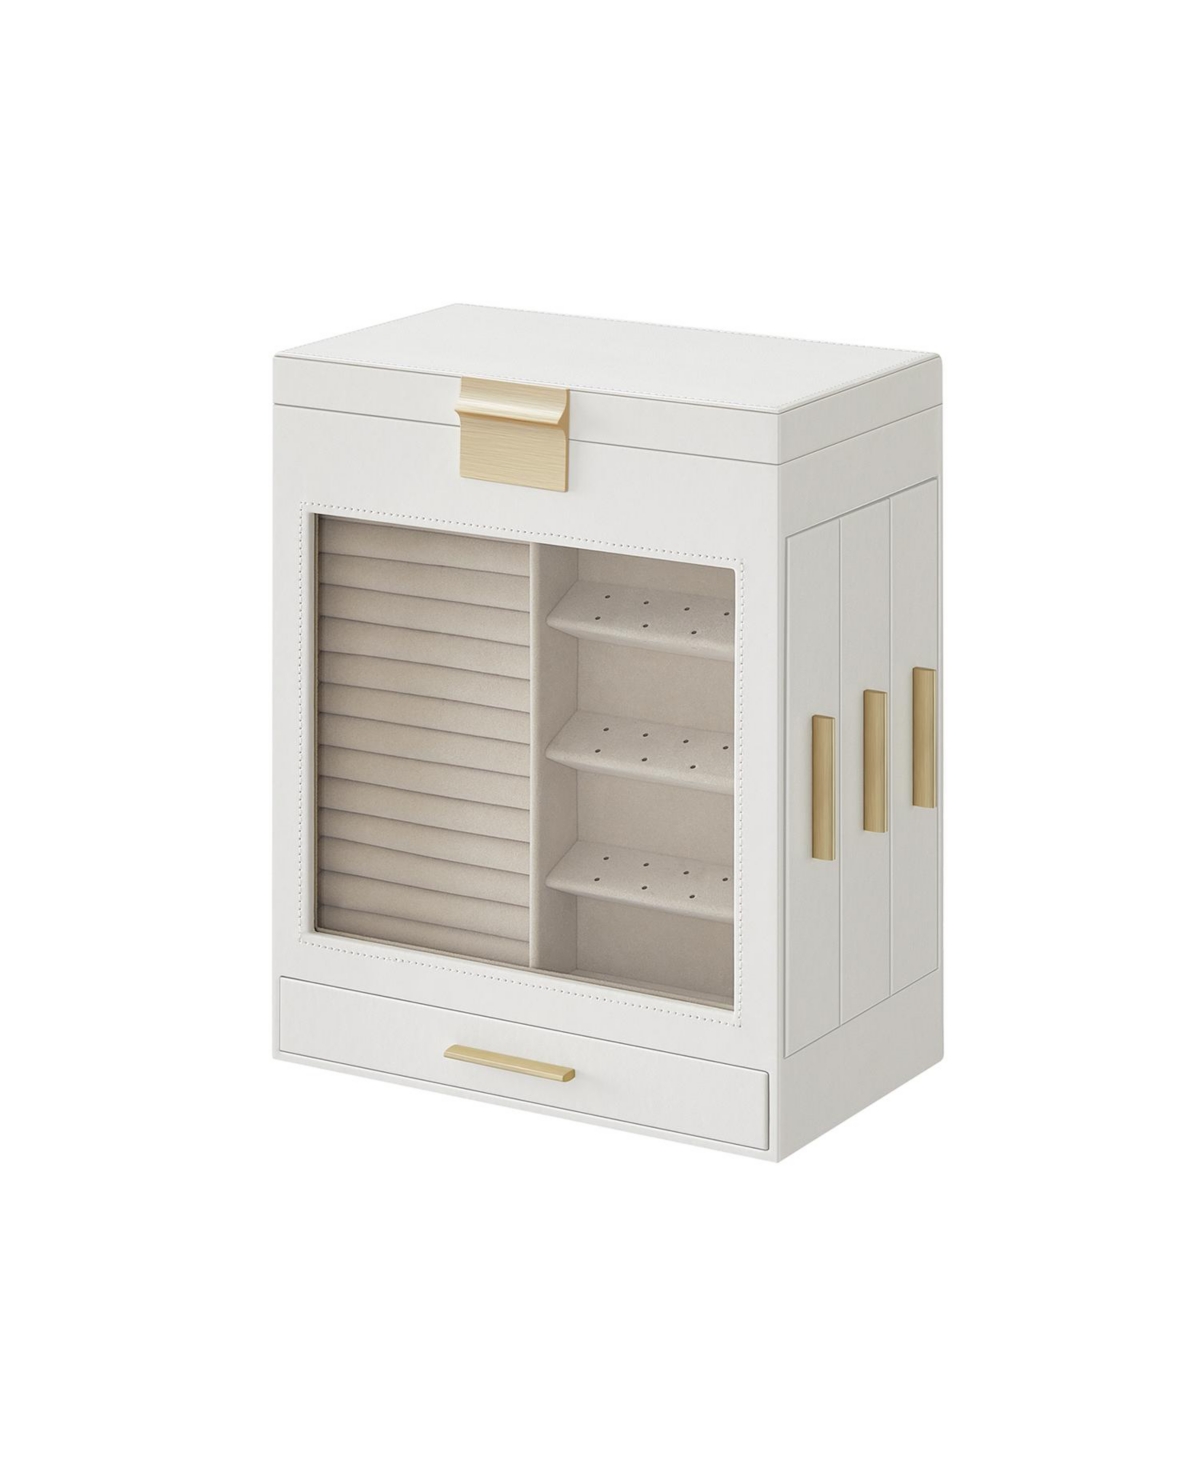 Jewelry Box with Glass Window, 5-Layer Jewelry Organizer with 3 Side Drawers, Jewelry Storage - White